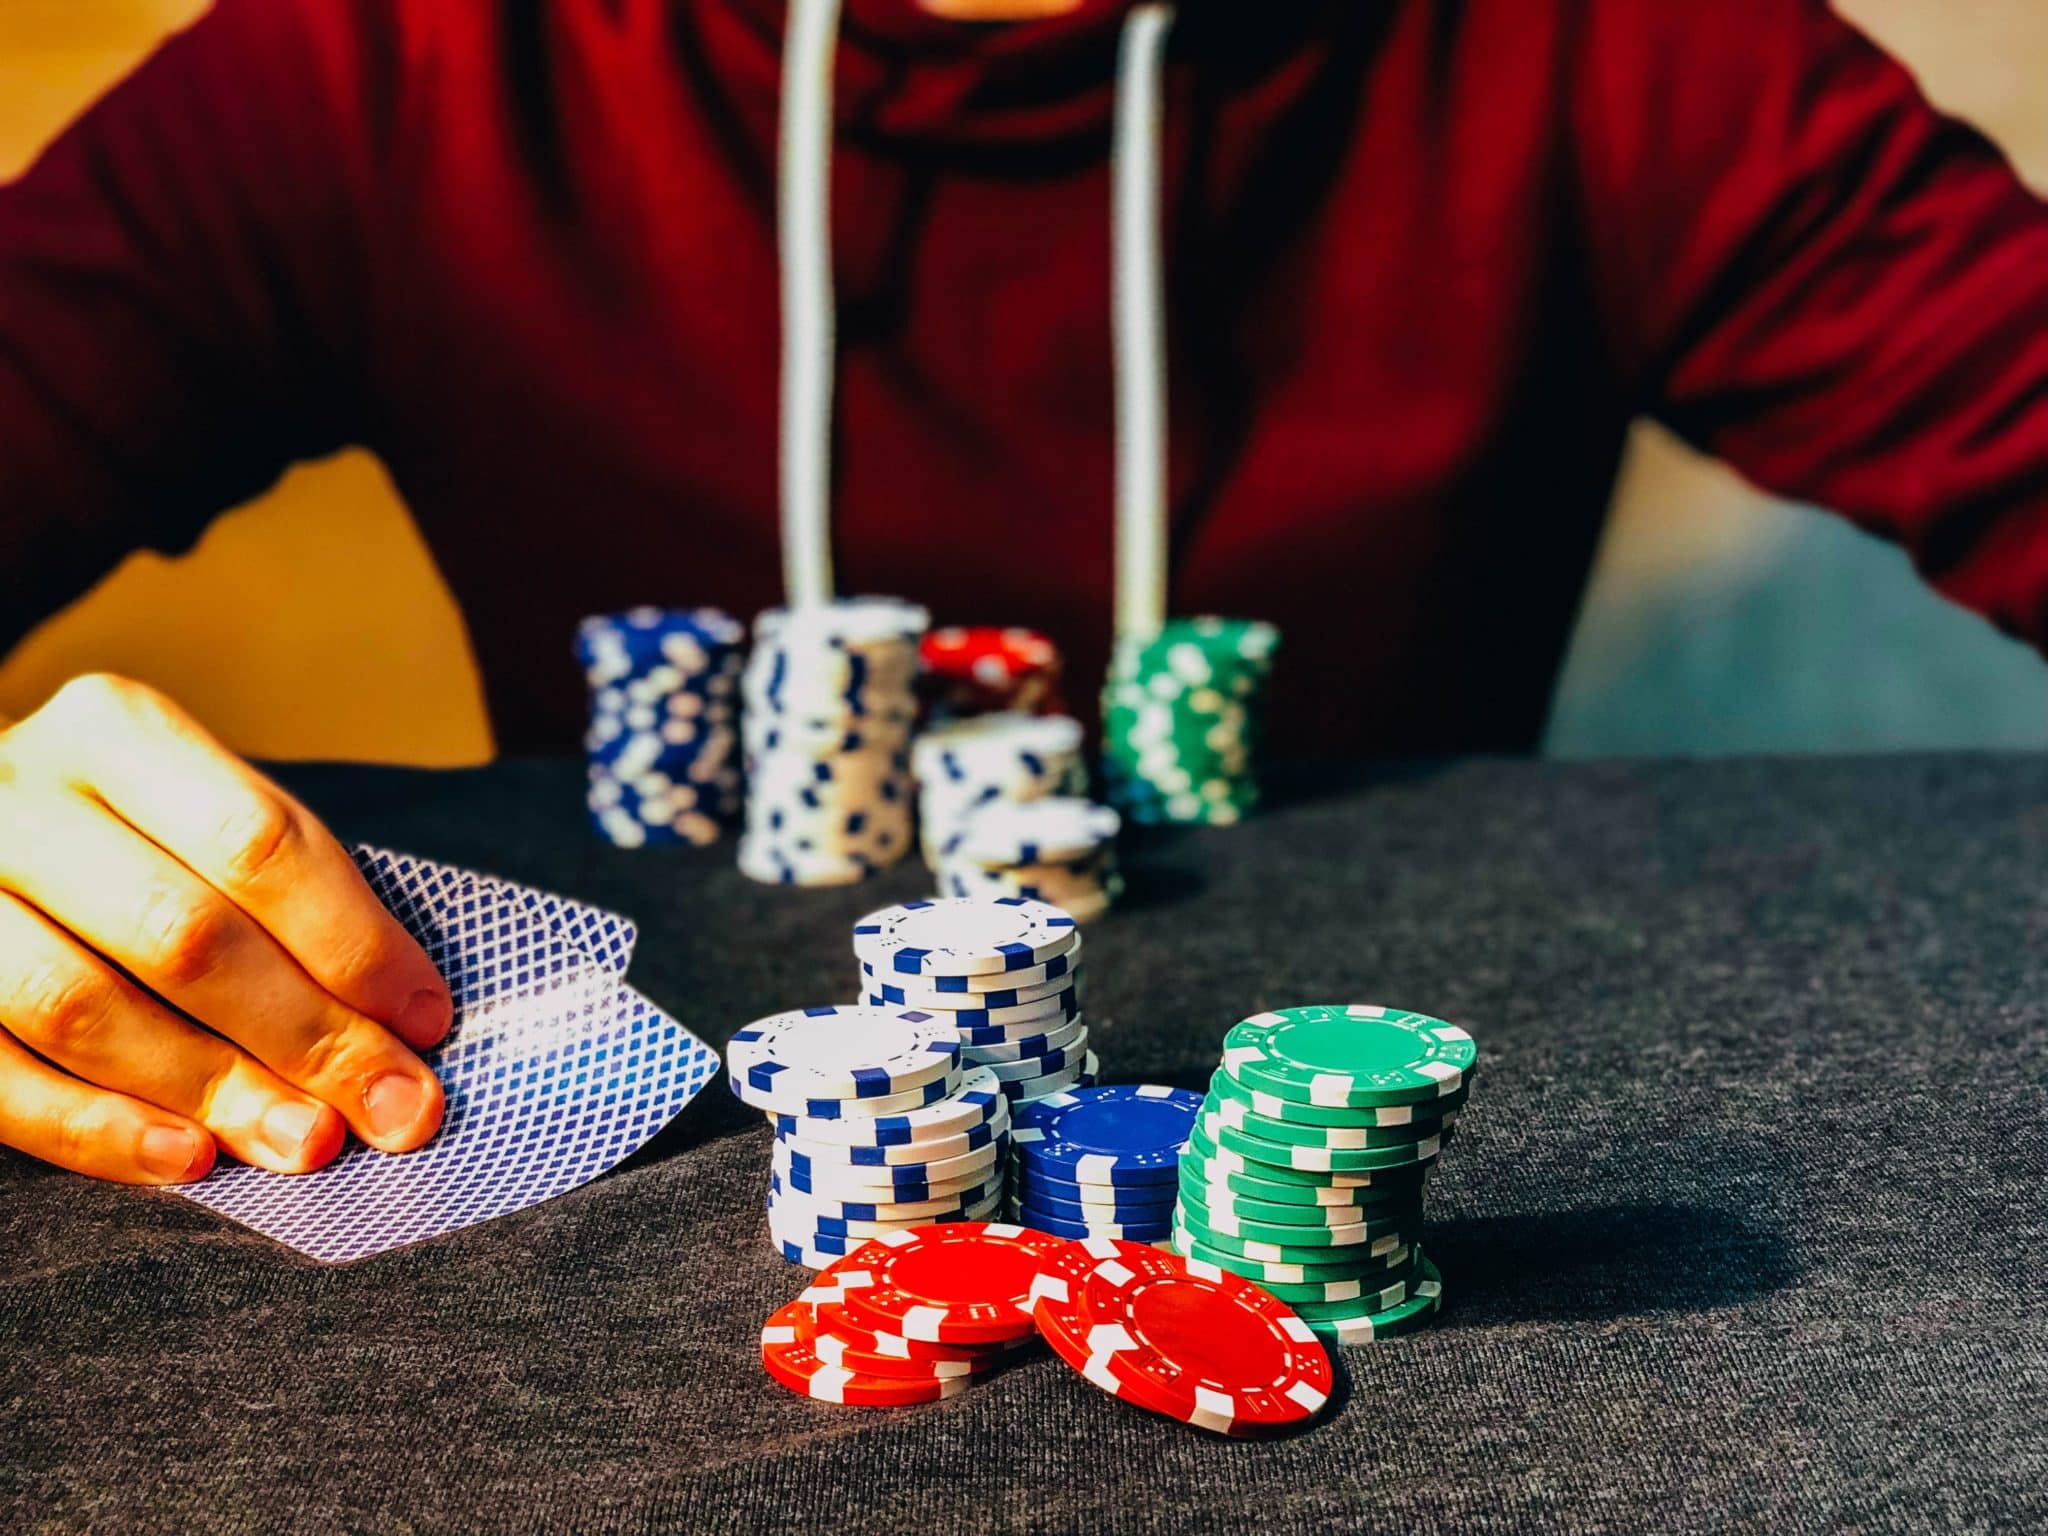 Les 3 paris les plus risqués sur les principaux jeux de table des casinos en ligne